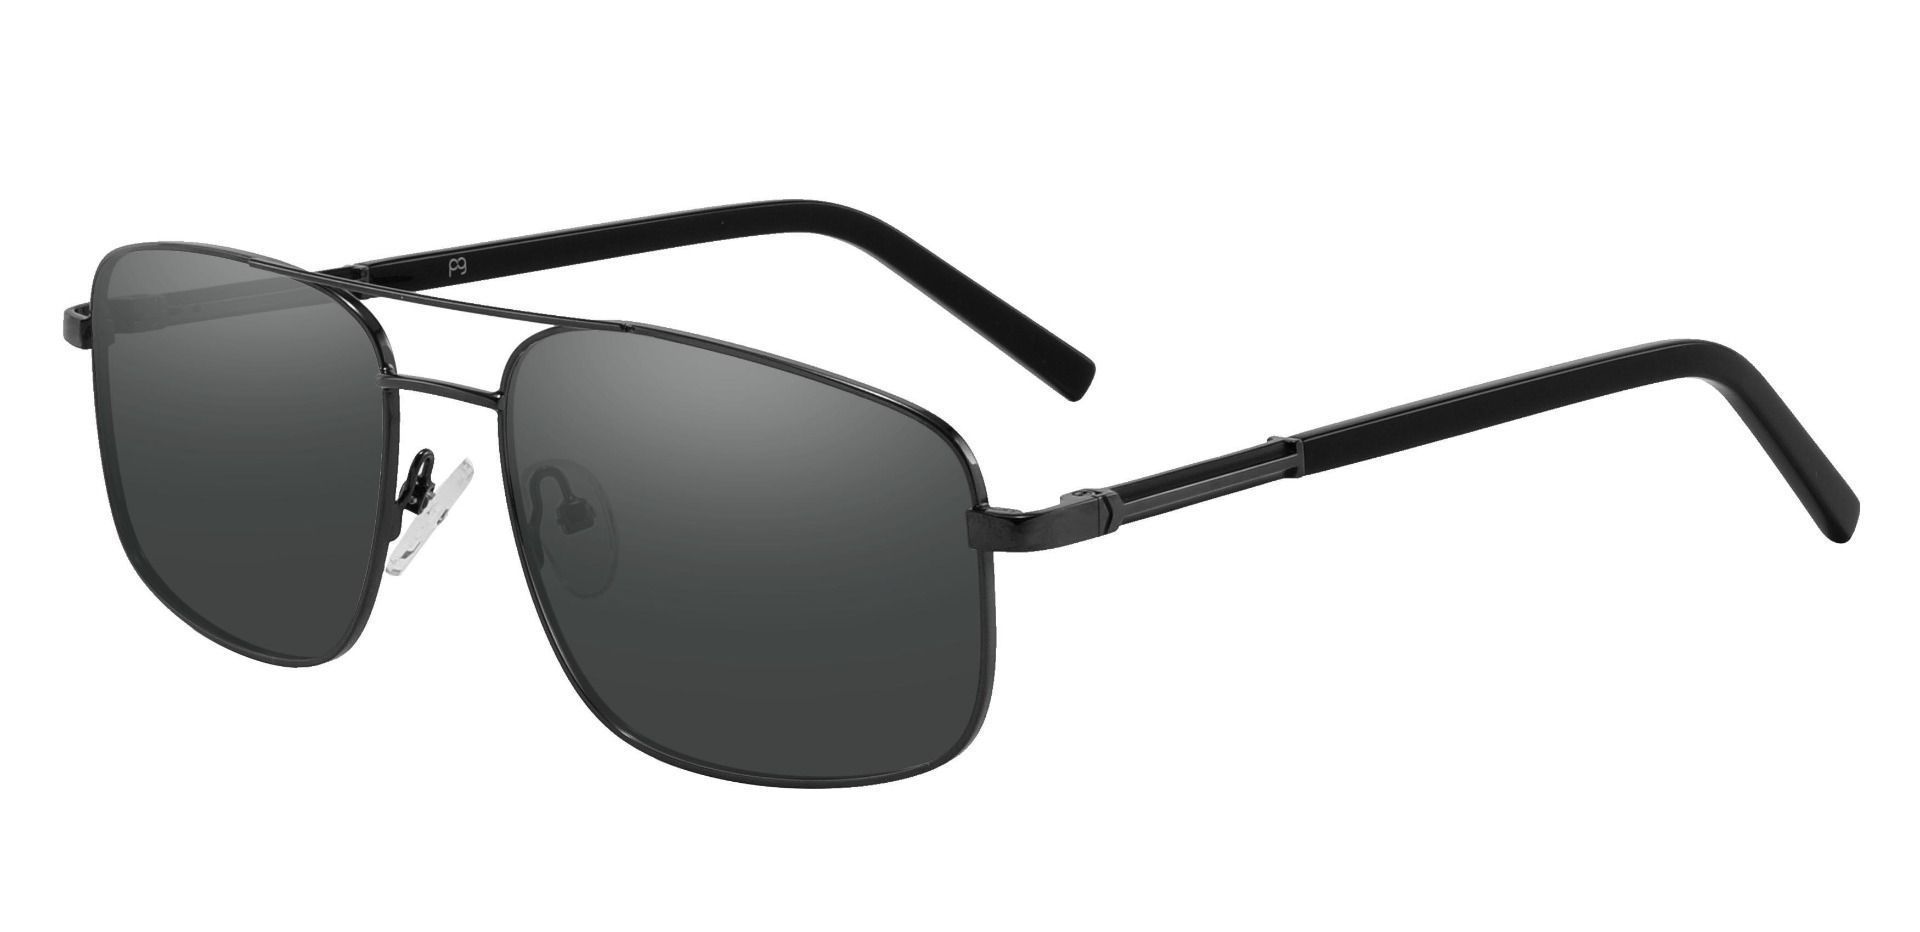 Davenport Aviator Reading Sunglasses - Black Frame With Gray Lenses